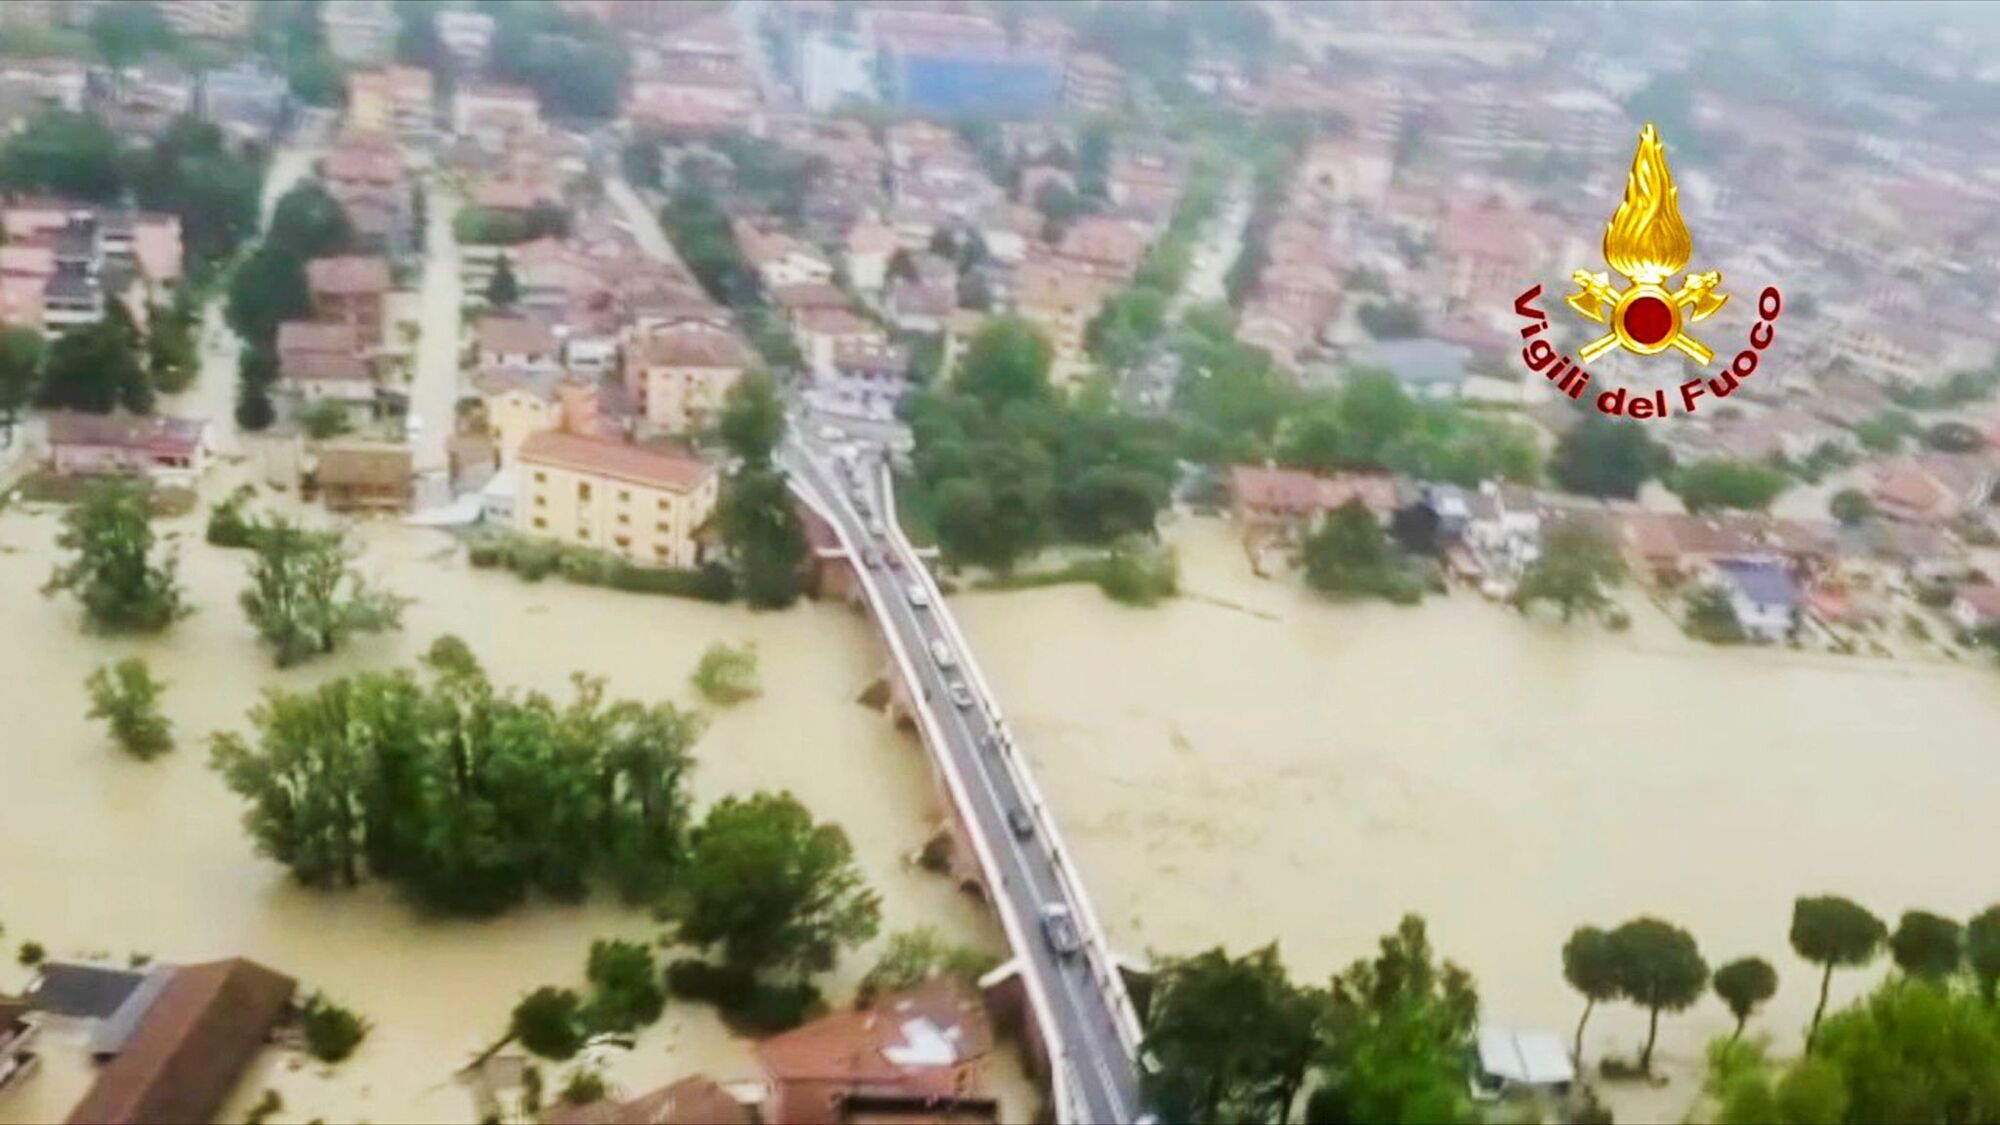 Италию накрыло разрушительное наводнение: есть погибшие, тысячи людей эвакуированы. Фото и видео